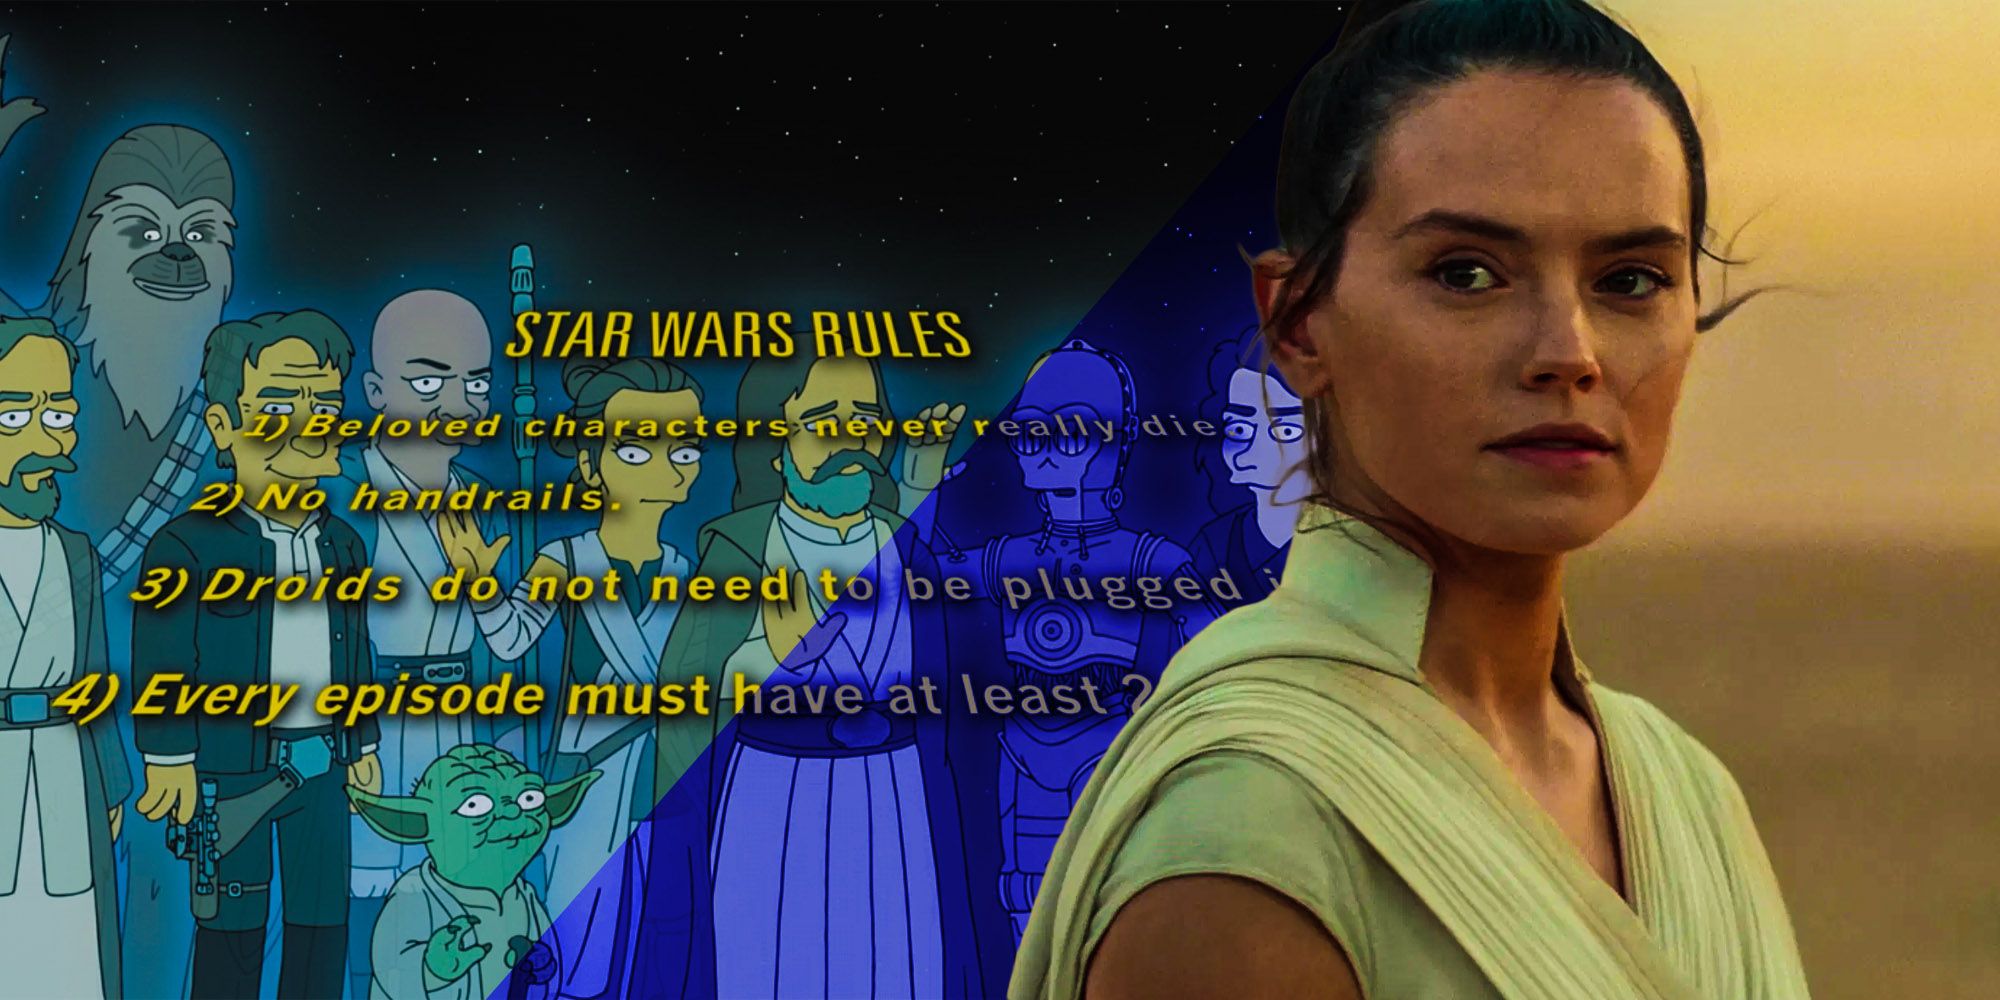 Rey Star wars rise of skywalker Star wars rules the simpsons